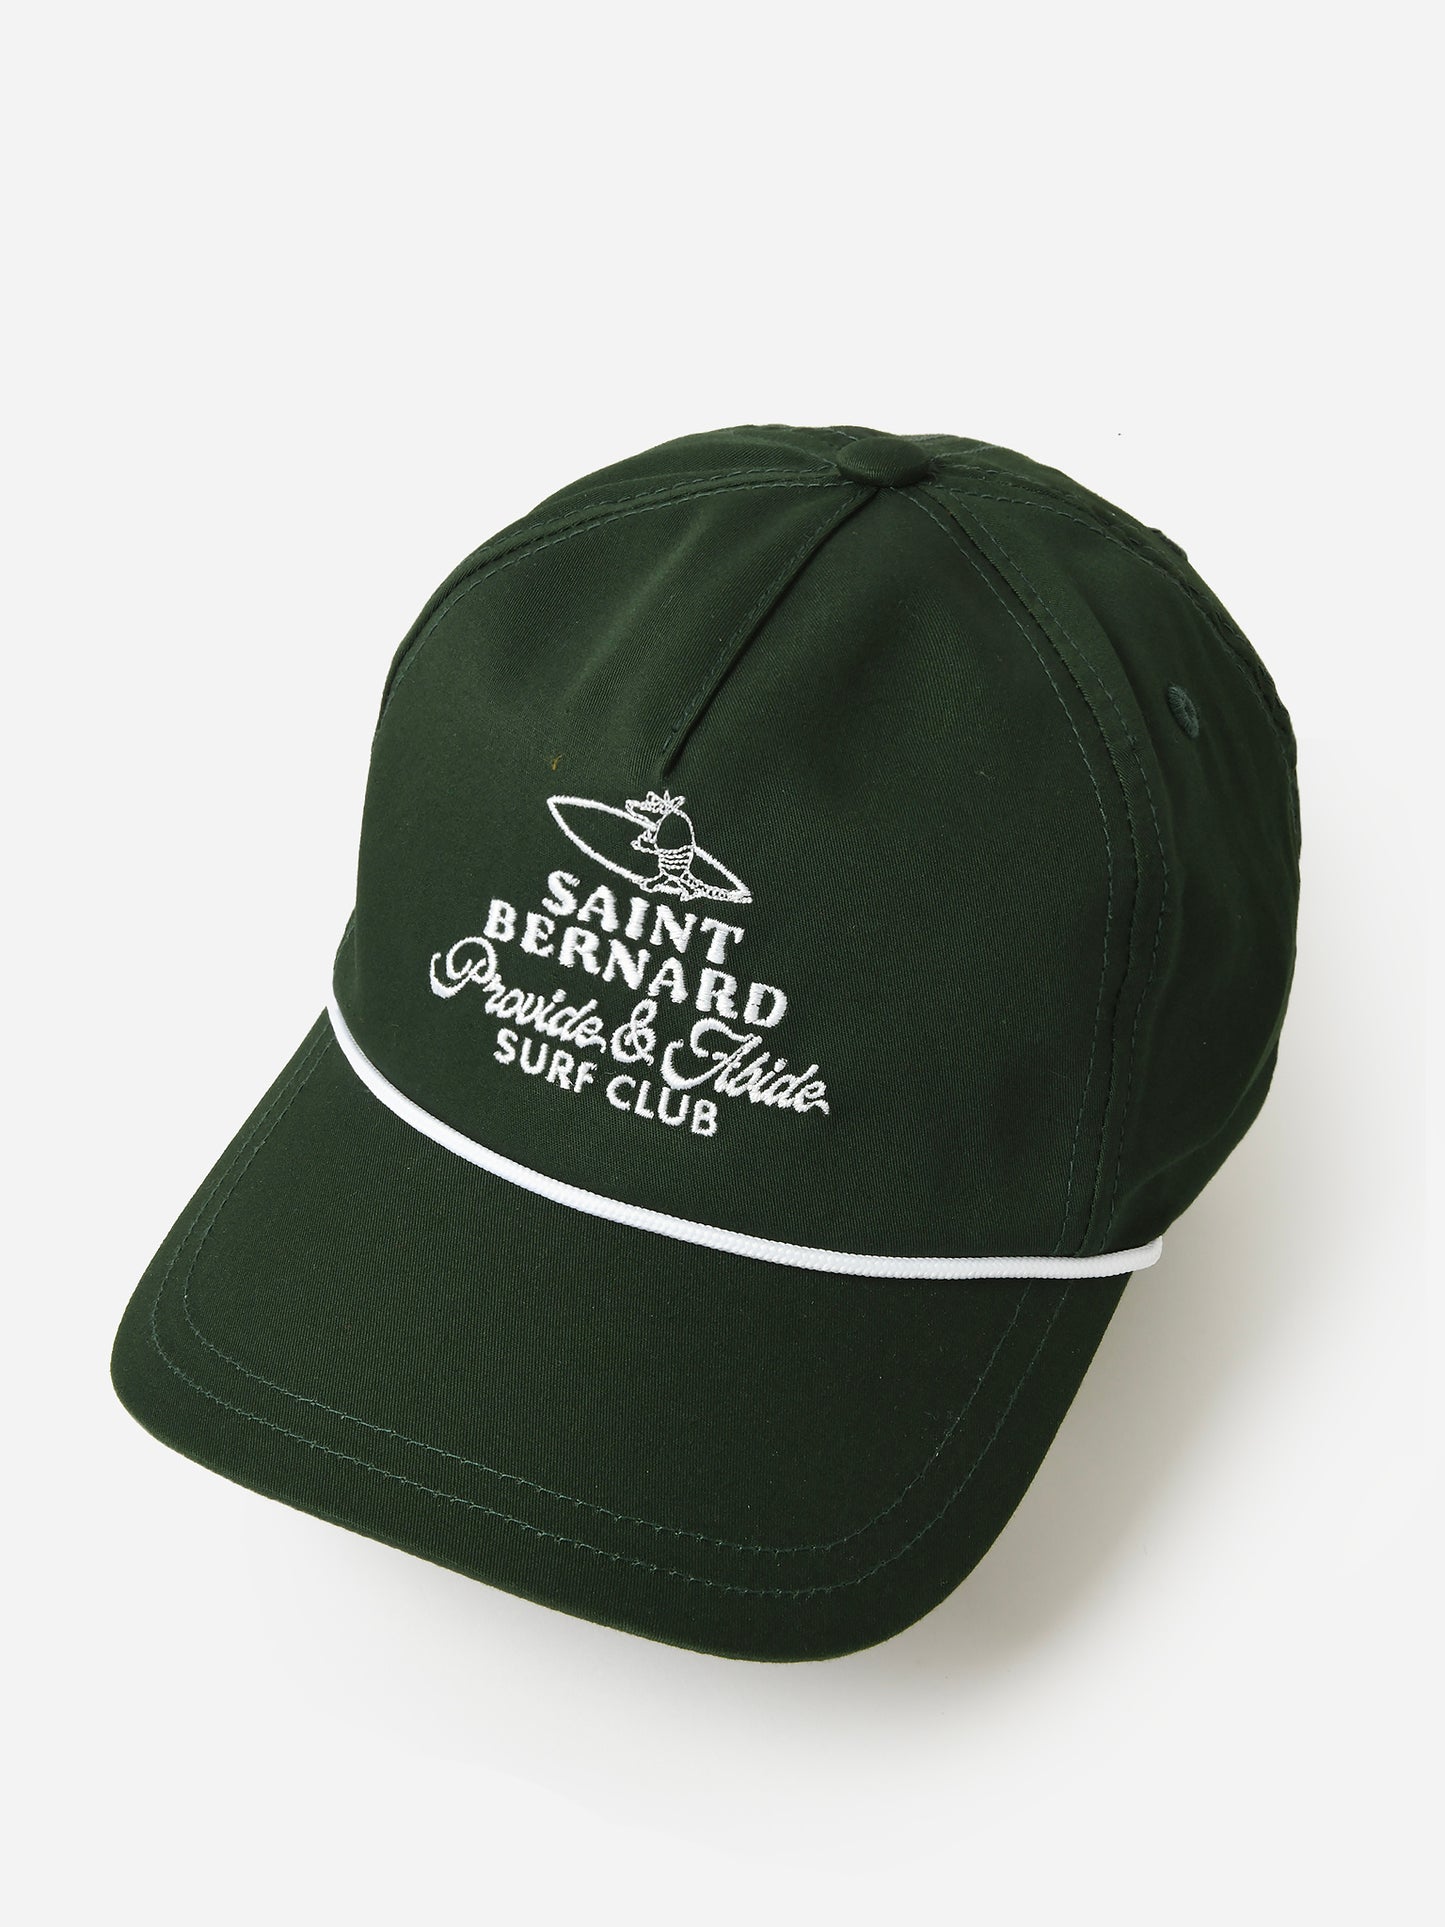 Saint Bernard Surf Club Lightweight Rope Hat